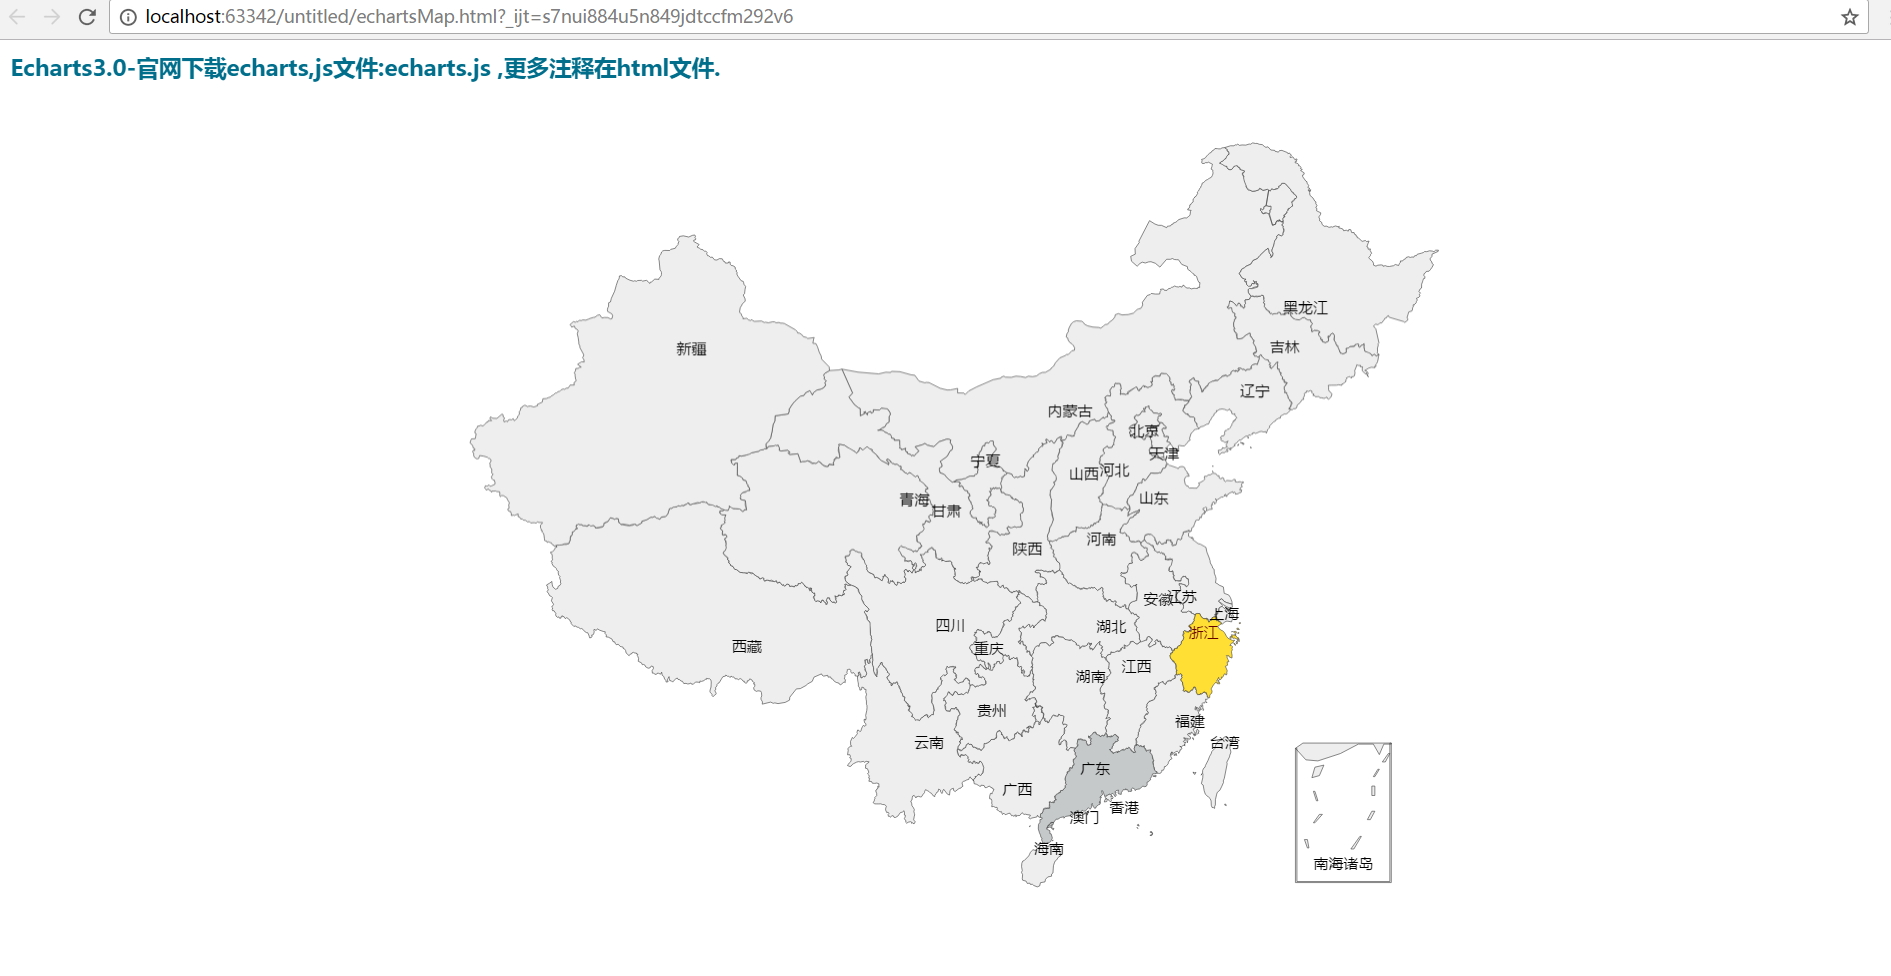 echarts初次使用,自定义china-map省份默认颜色